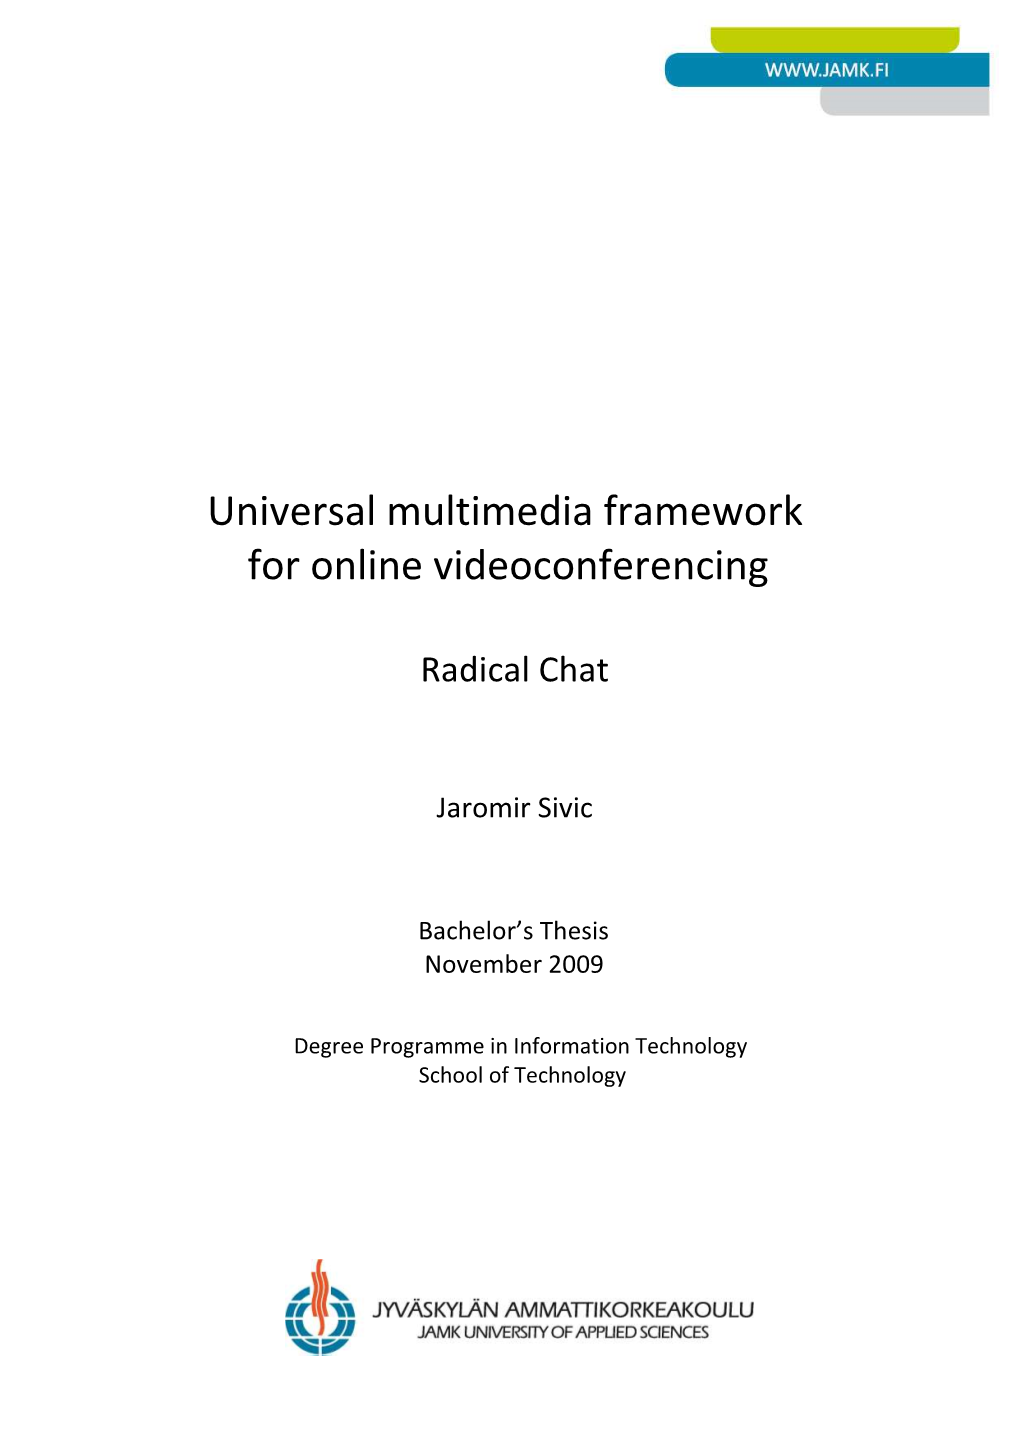 Universal Multimedia Framework for Online Videoconferencing